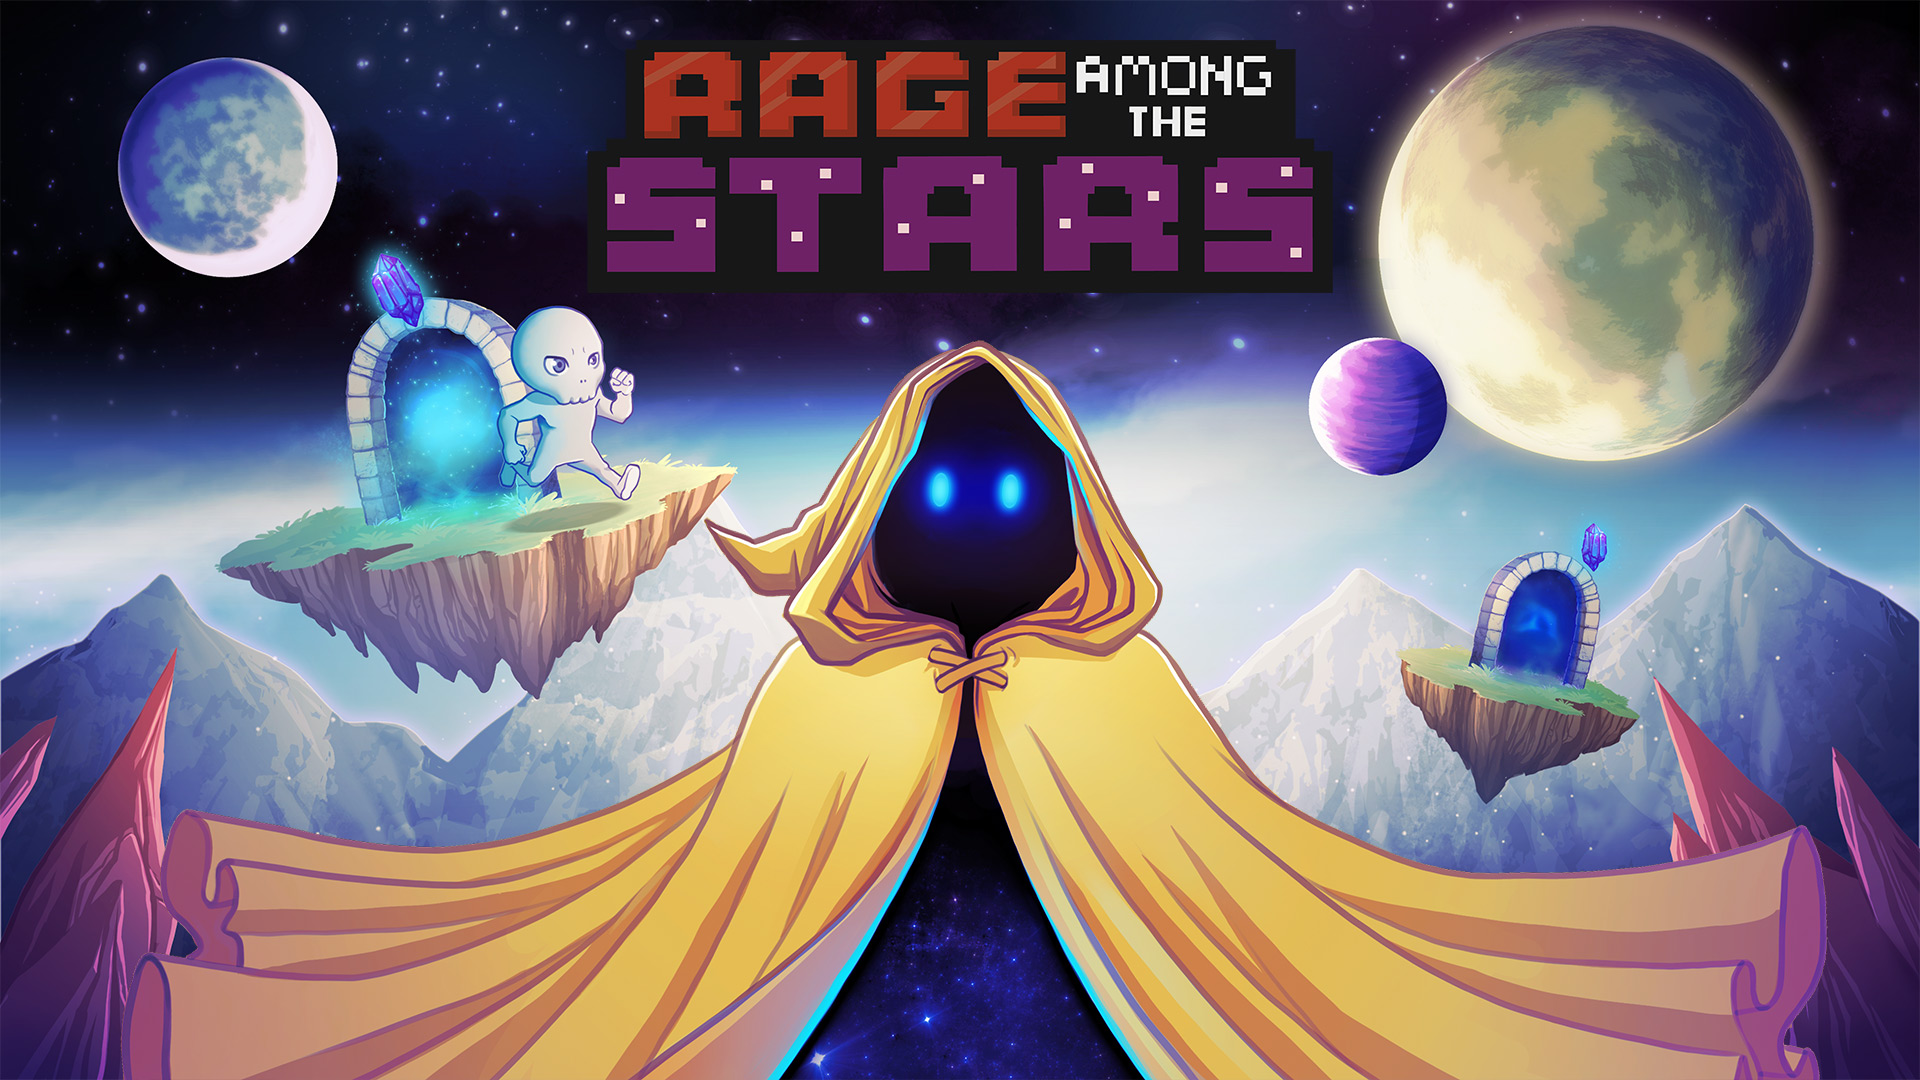 Rage Among the Stars